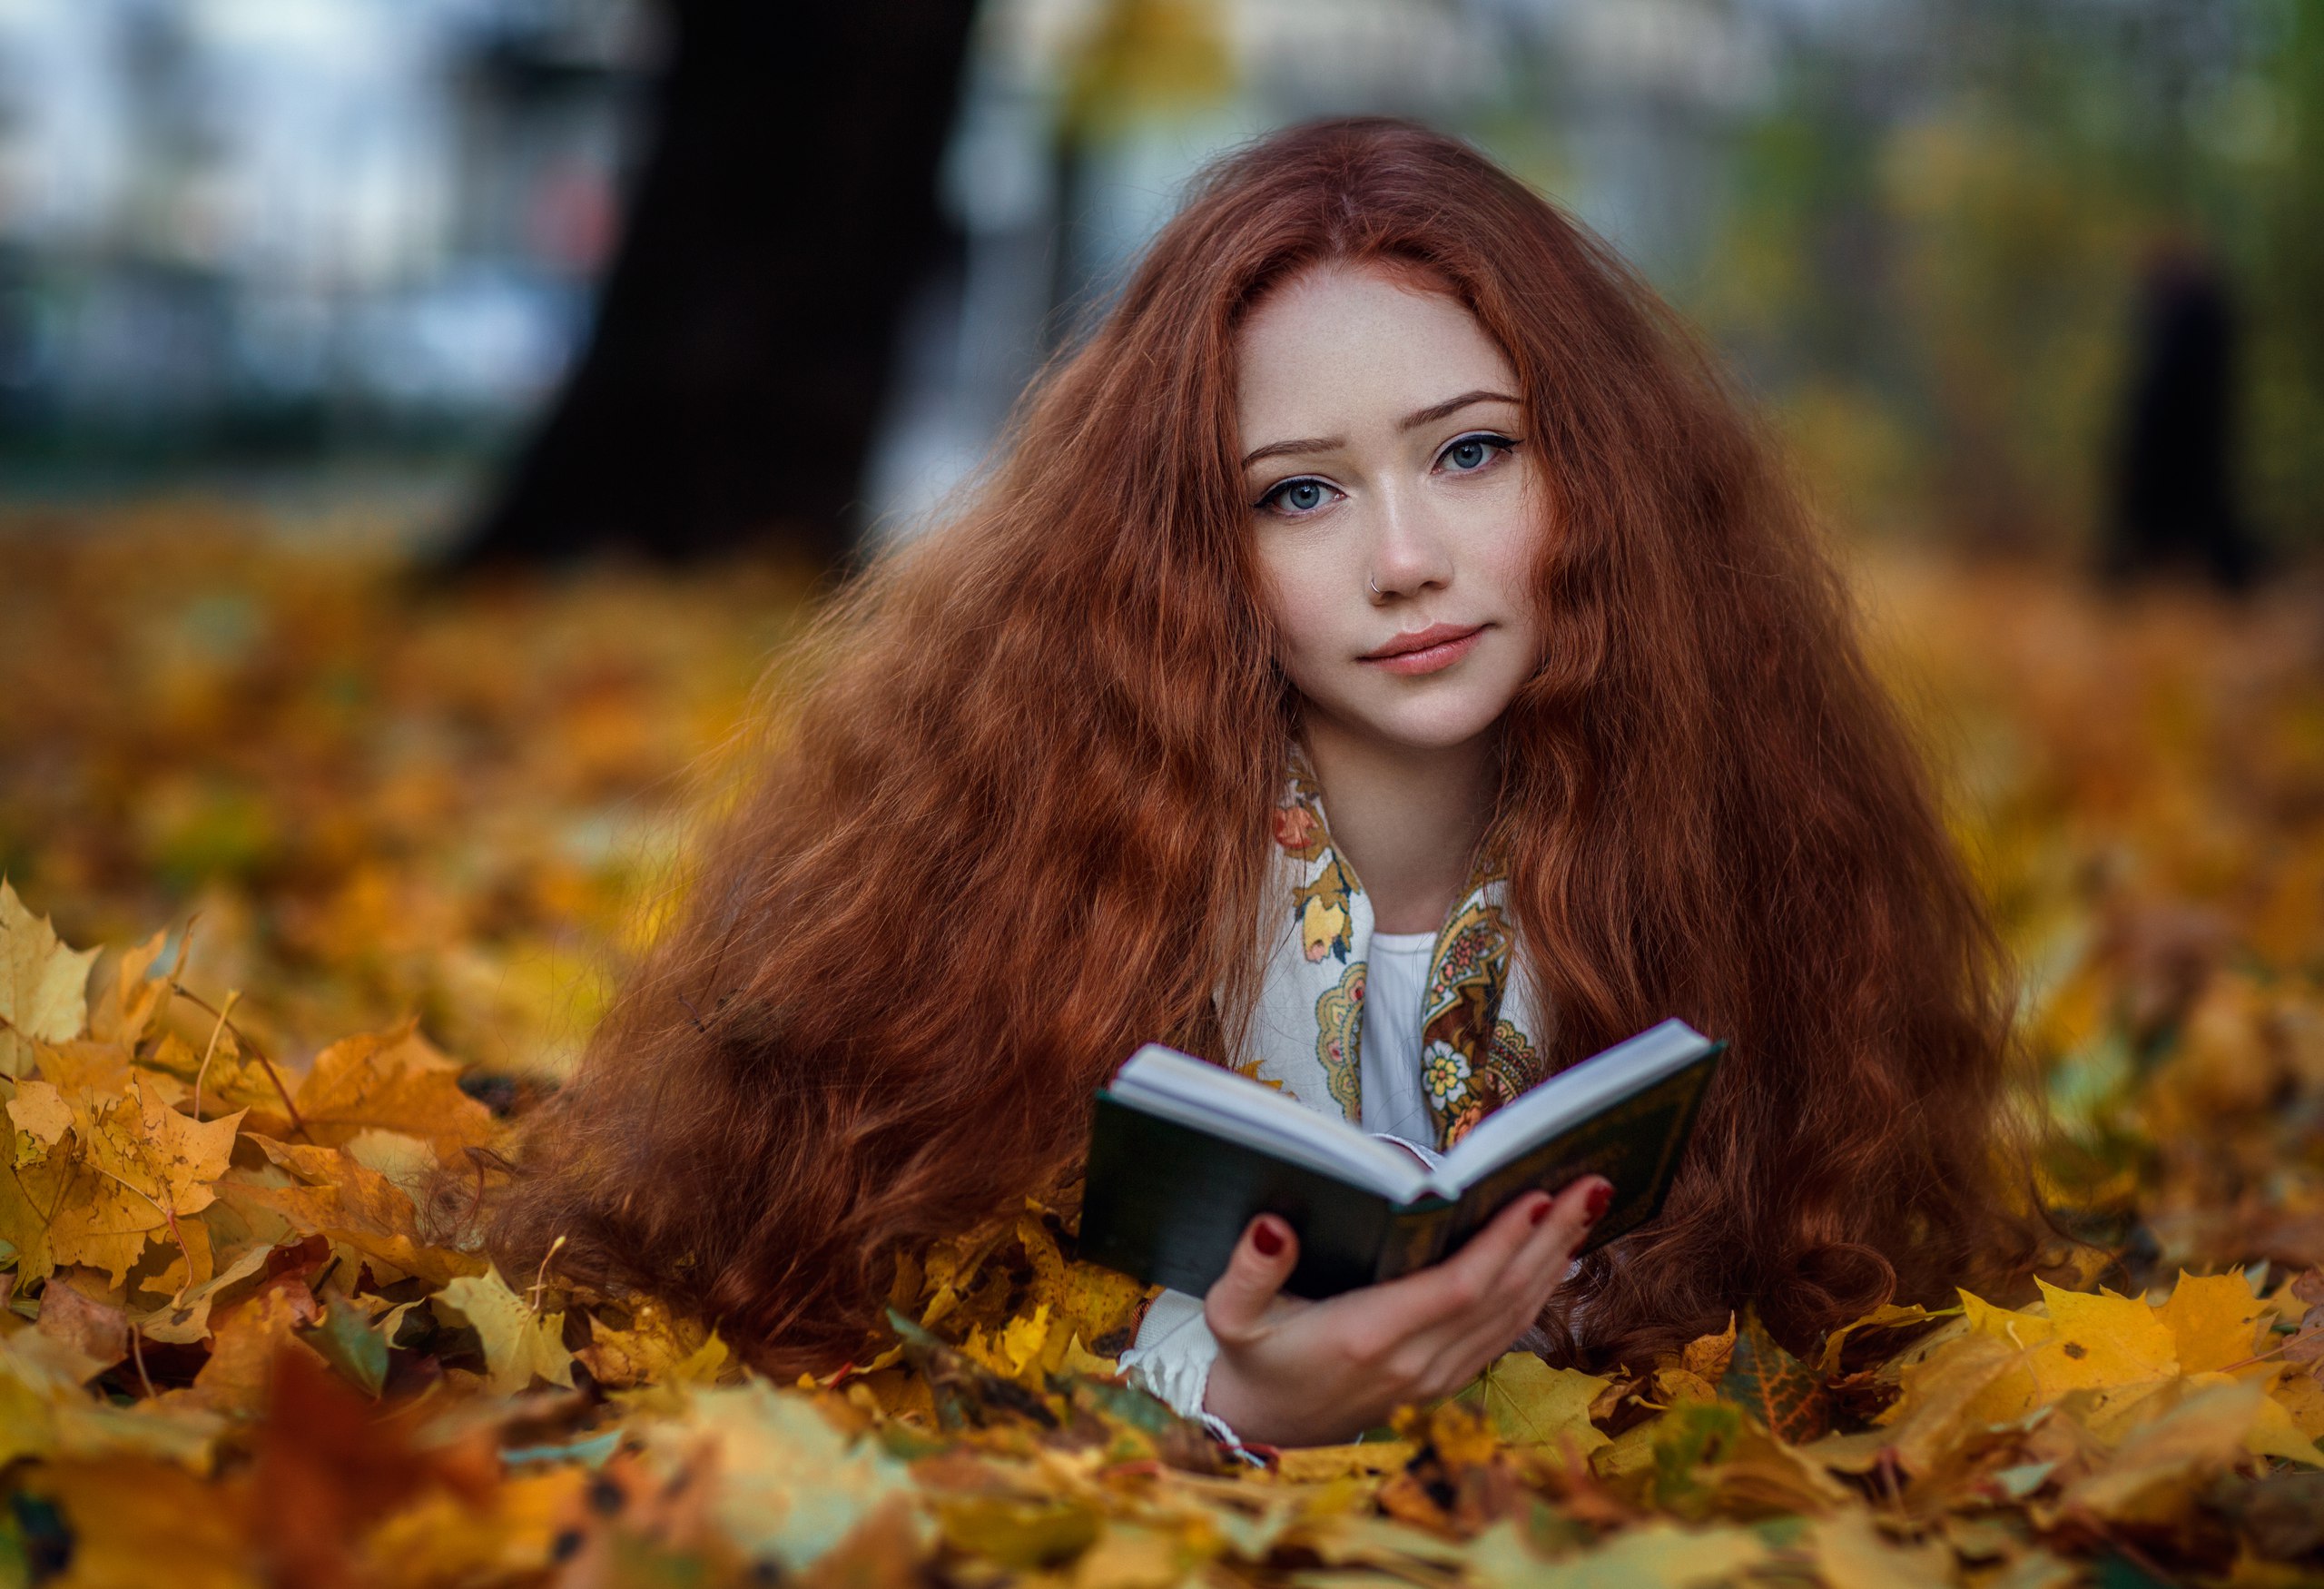 Hakan Erenler Women Model Portrait Outdoors Looking At Viewer Depth Of Field Redhead Long Hair Nose  2560x1750